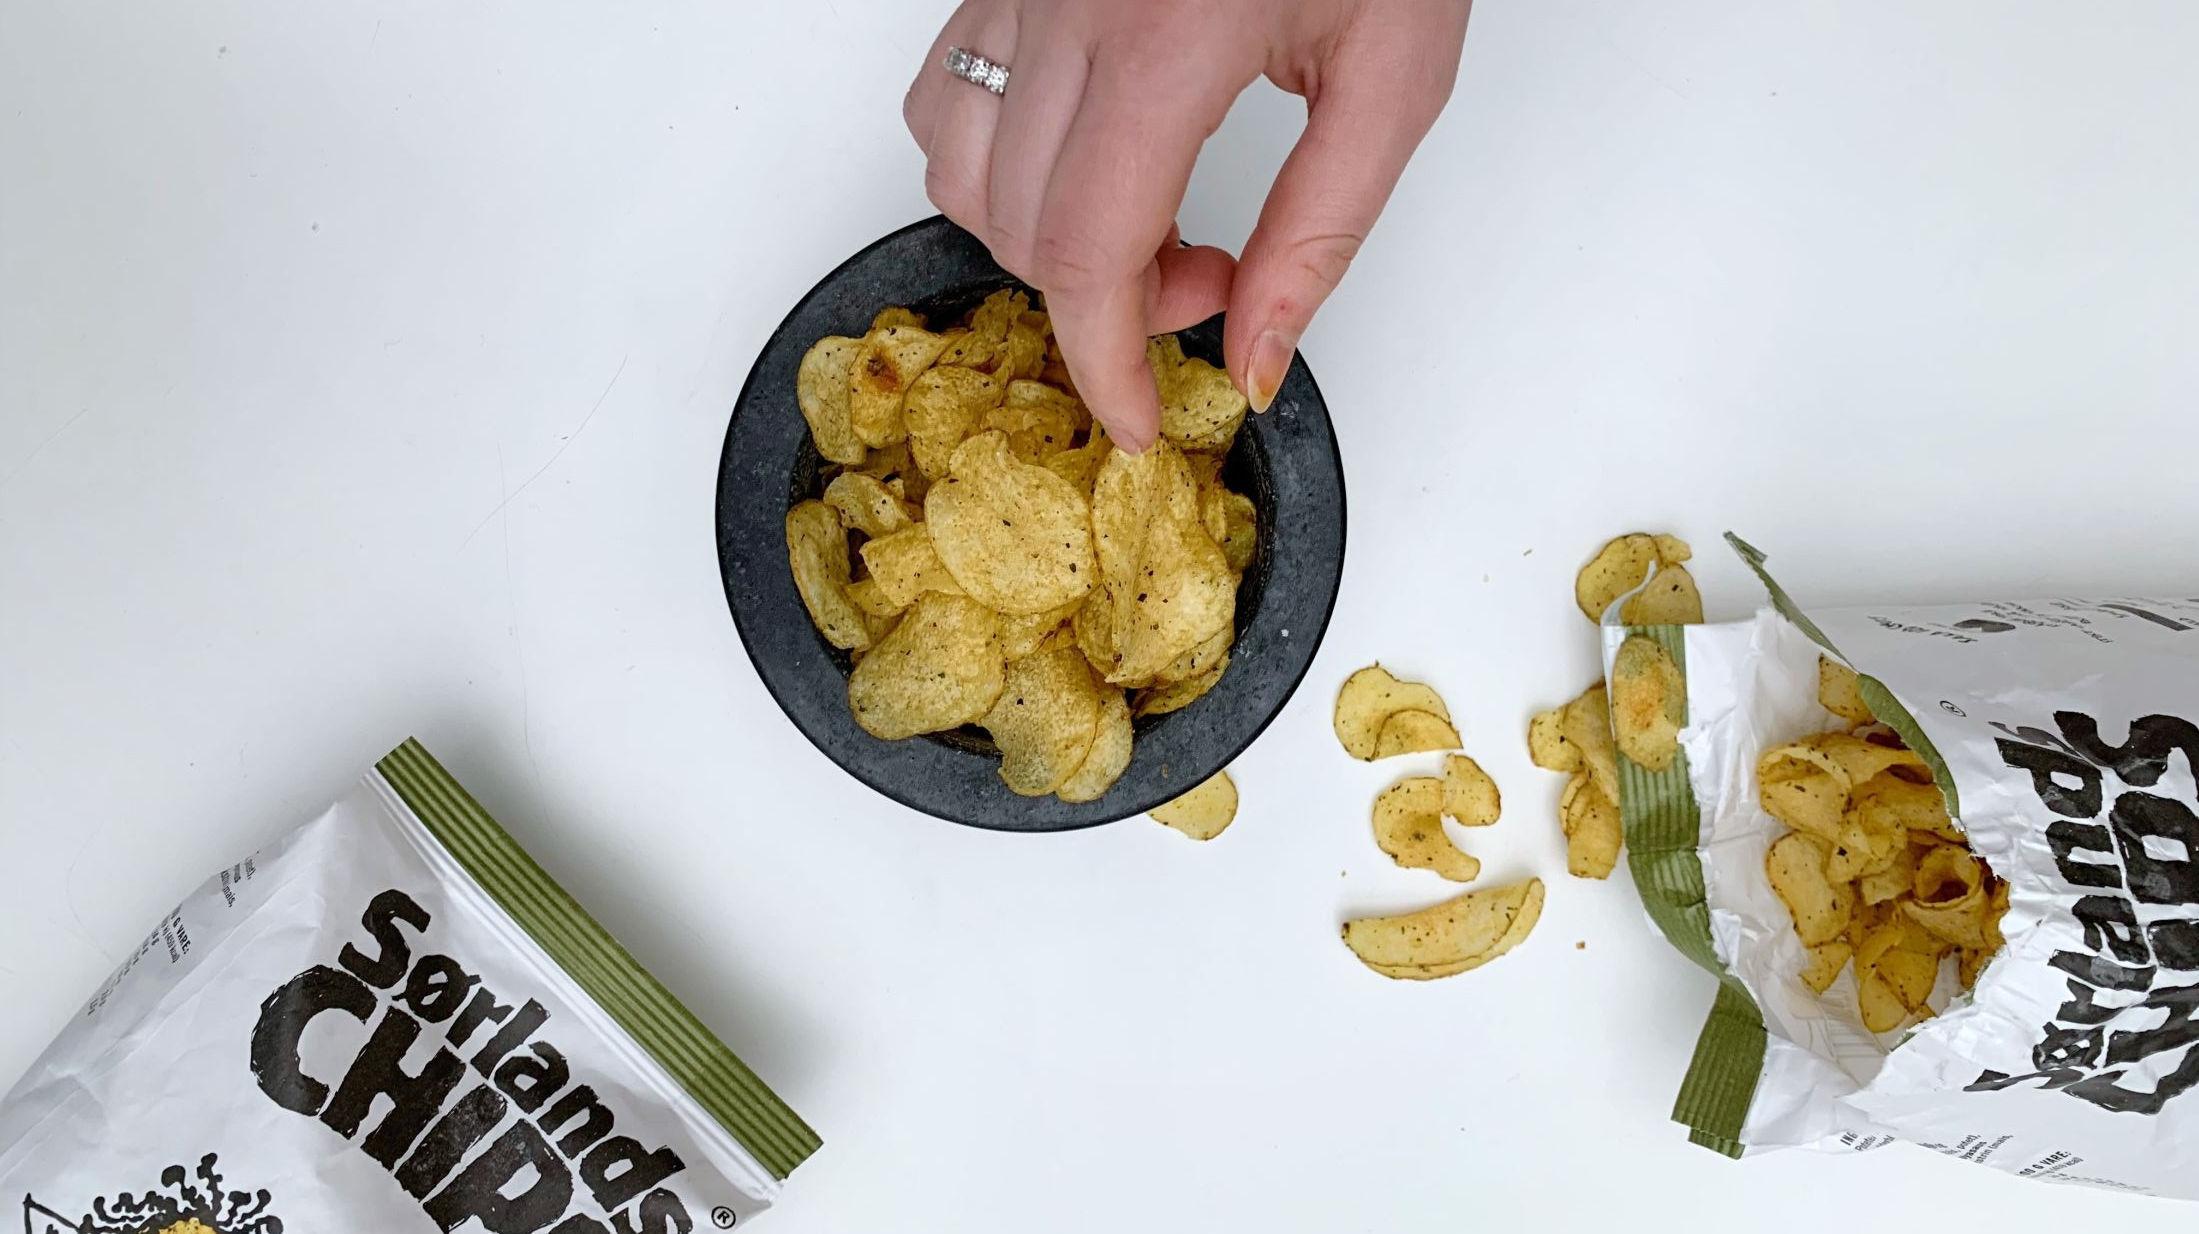 TANG DEN NYE PAPRIKAEN?: Tang har en umami-smak som kan passe godt på chips, ifølge kokk Christer Rødseth. Foto: Tjodunn Dyrnes